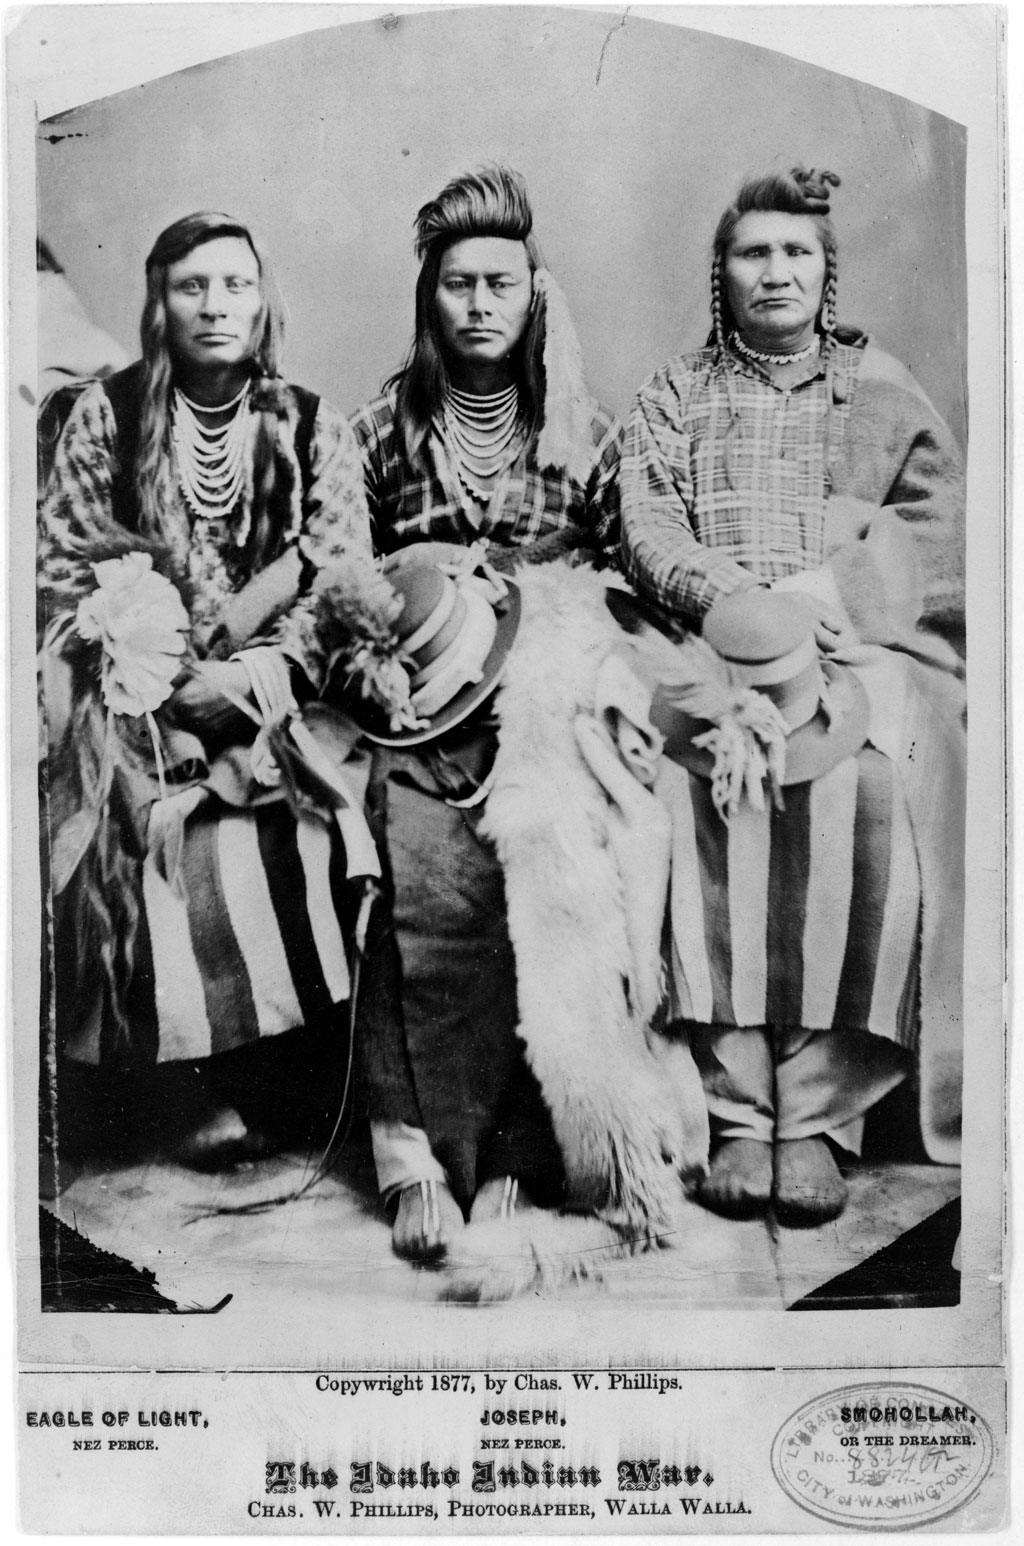 The Idaho Indian War